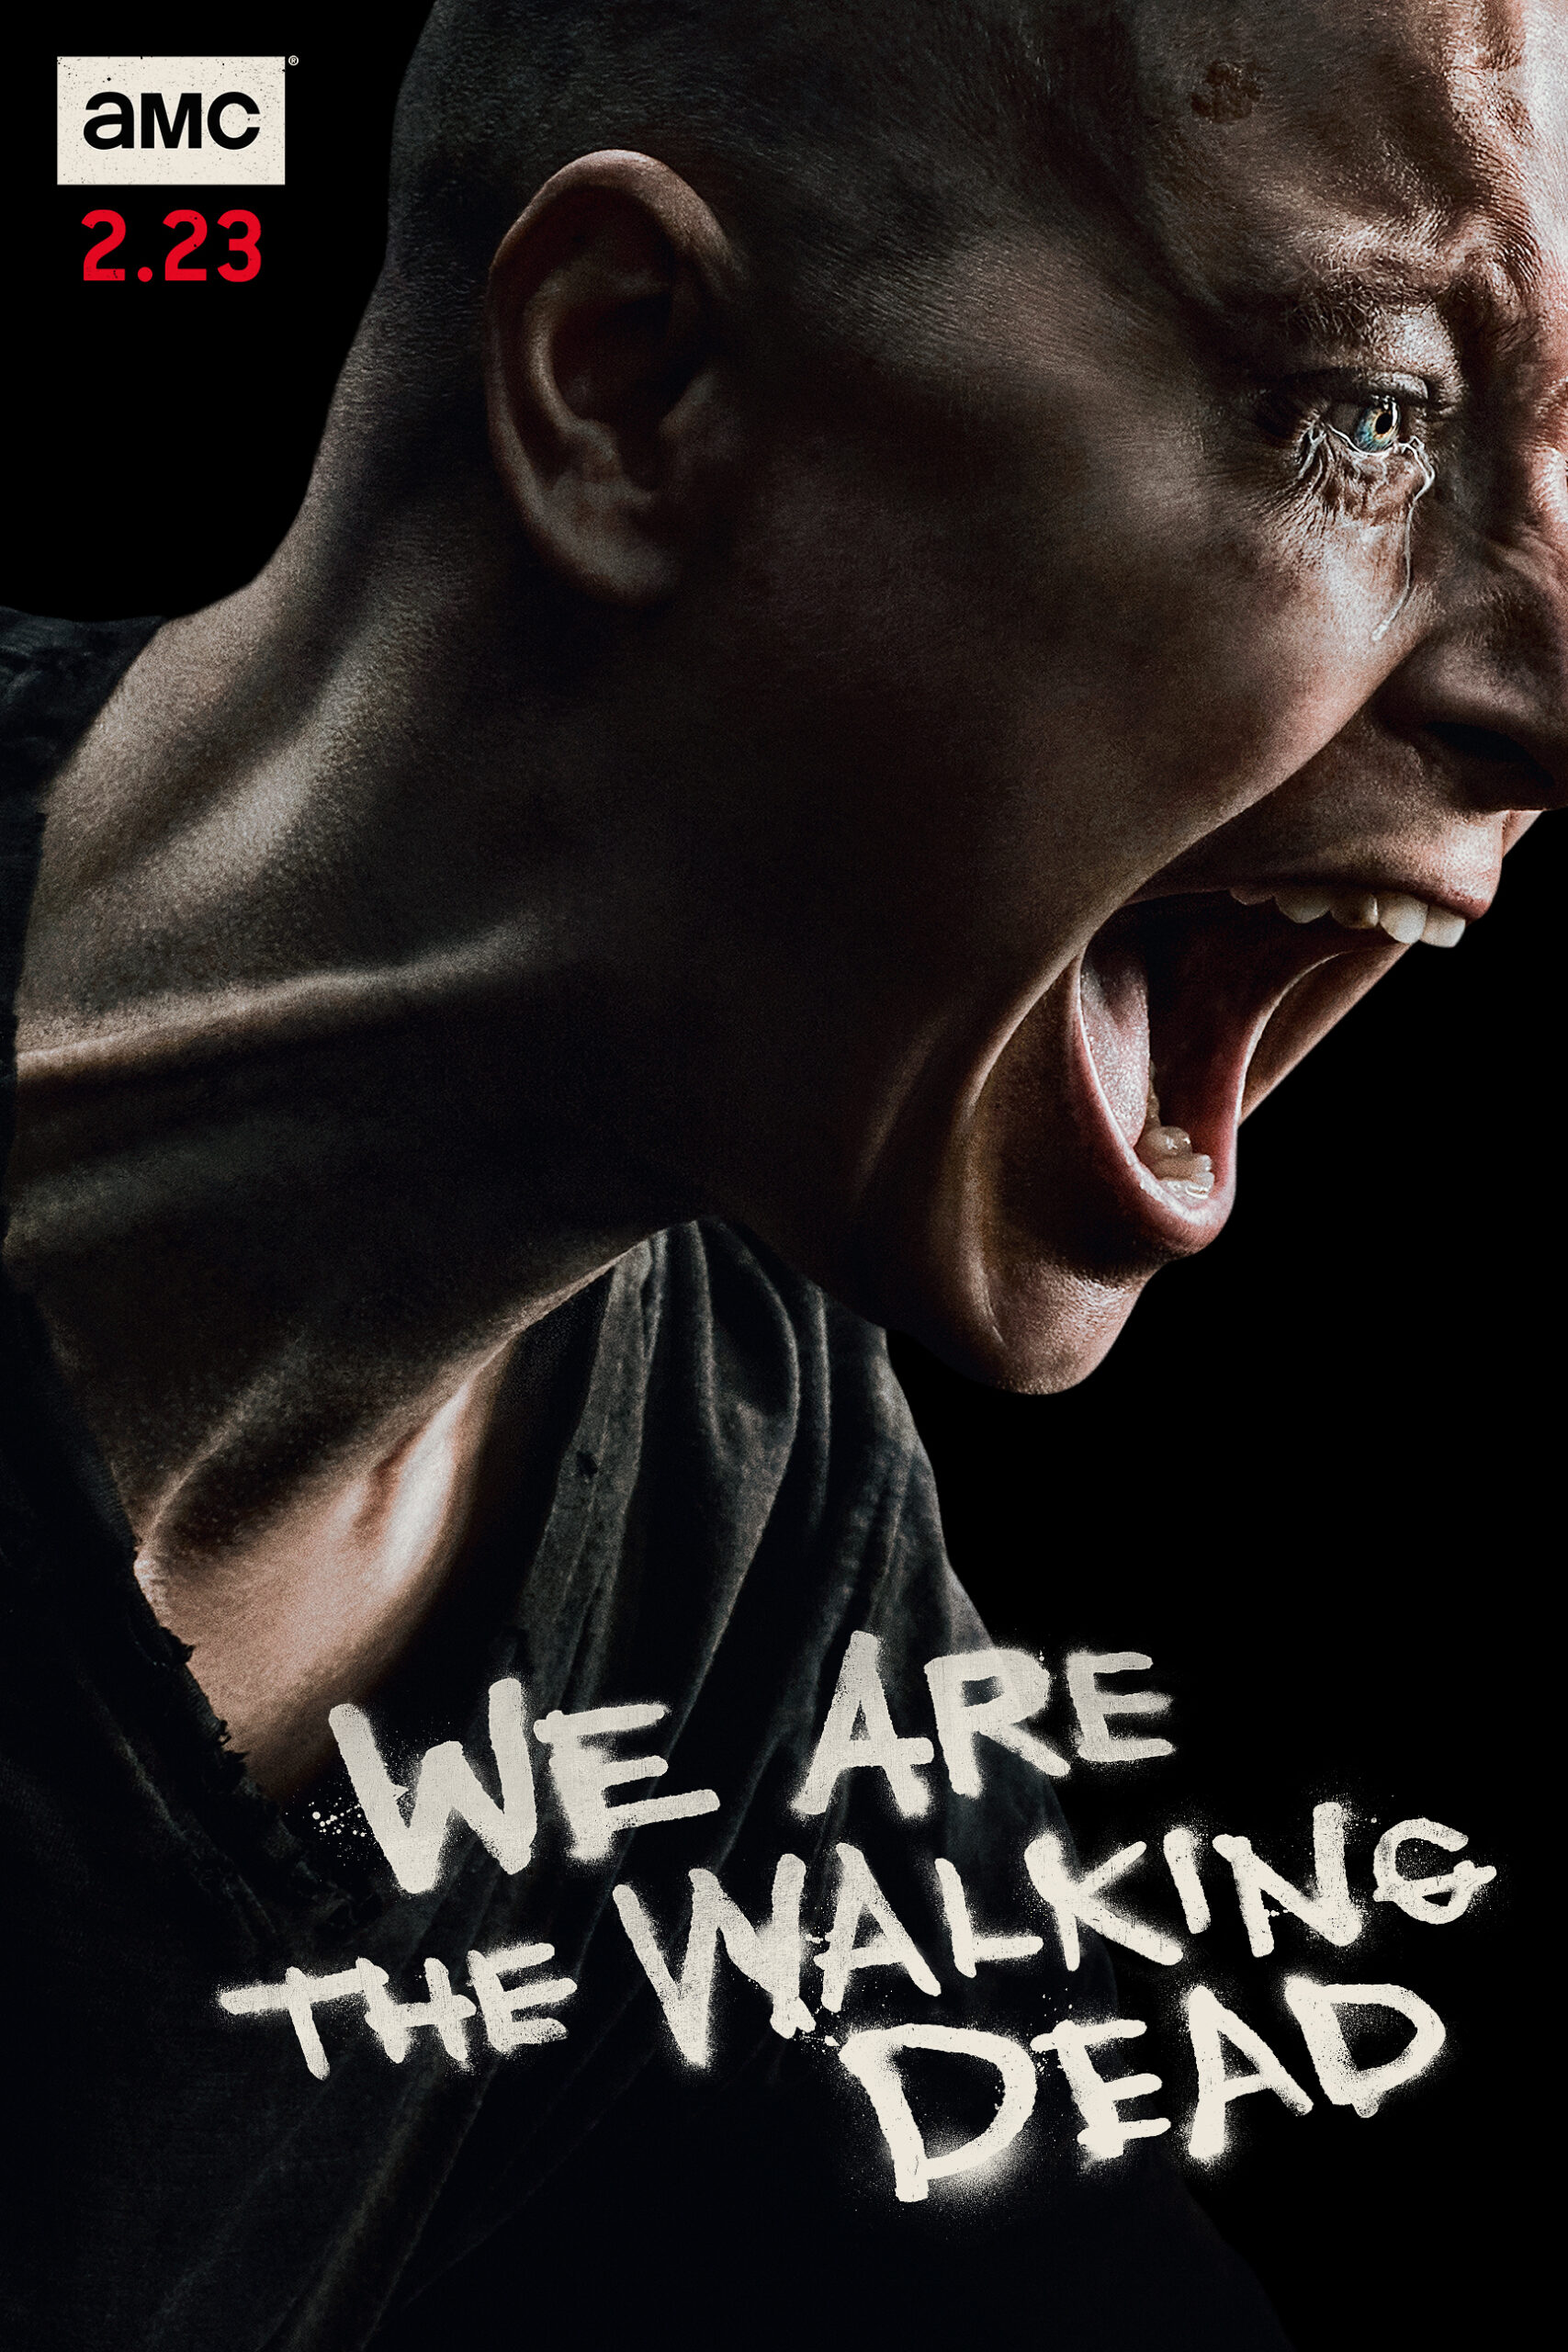 ดูหนังออนไลน์ฟรี The Walking Dead Season 4 EP13 เดอะวอล์กกิงเดด ปี4 ตอนที่13 [[Sub Thai]]